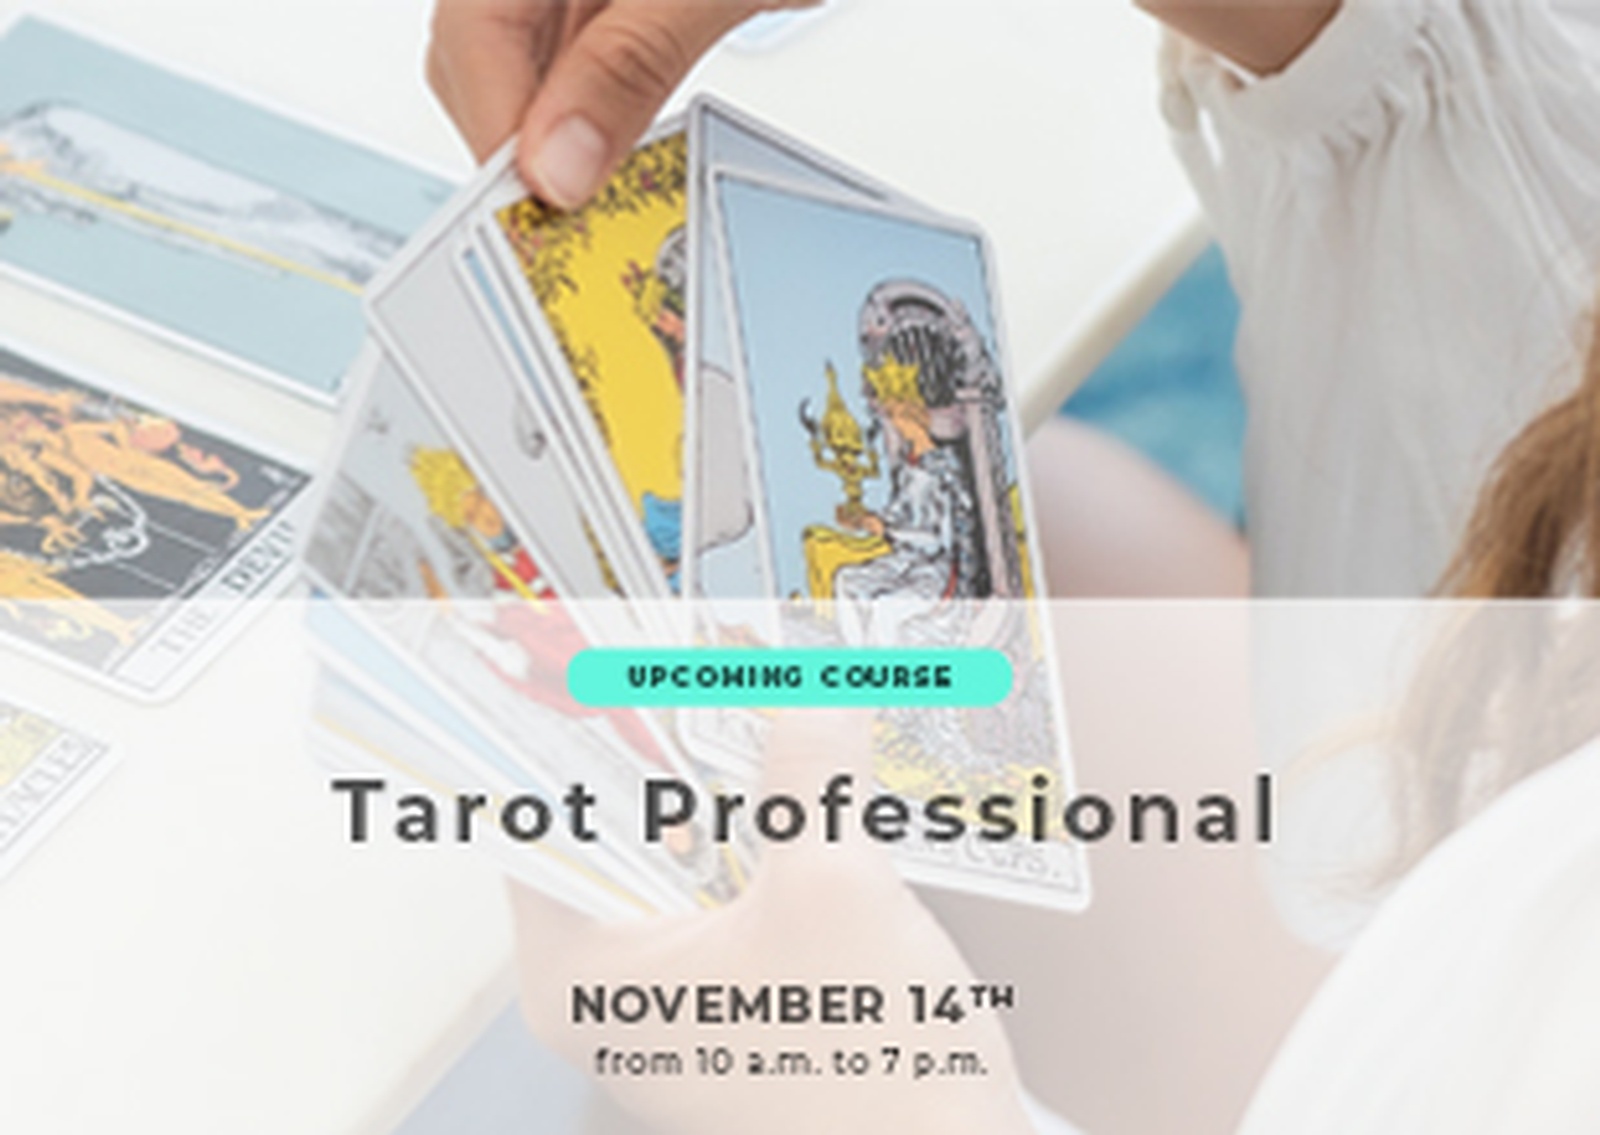 Tarot Courses